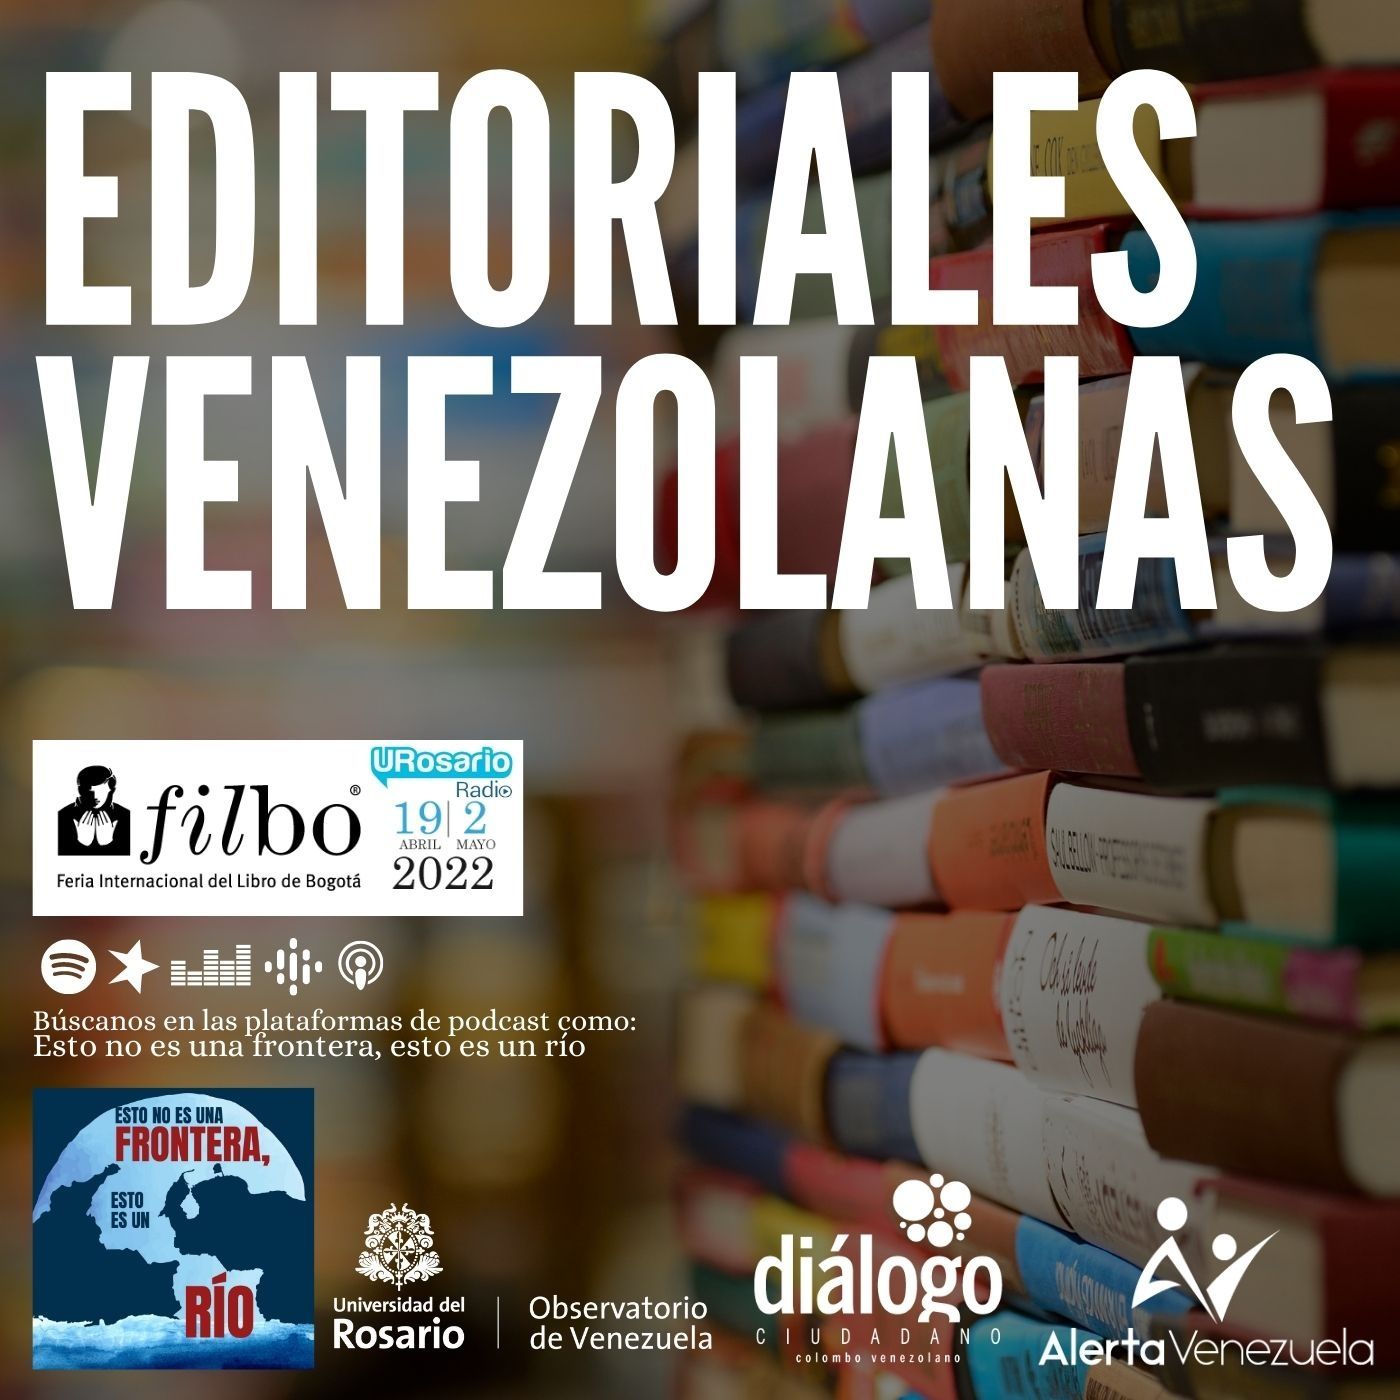 Editoriales venezolanas